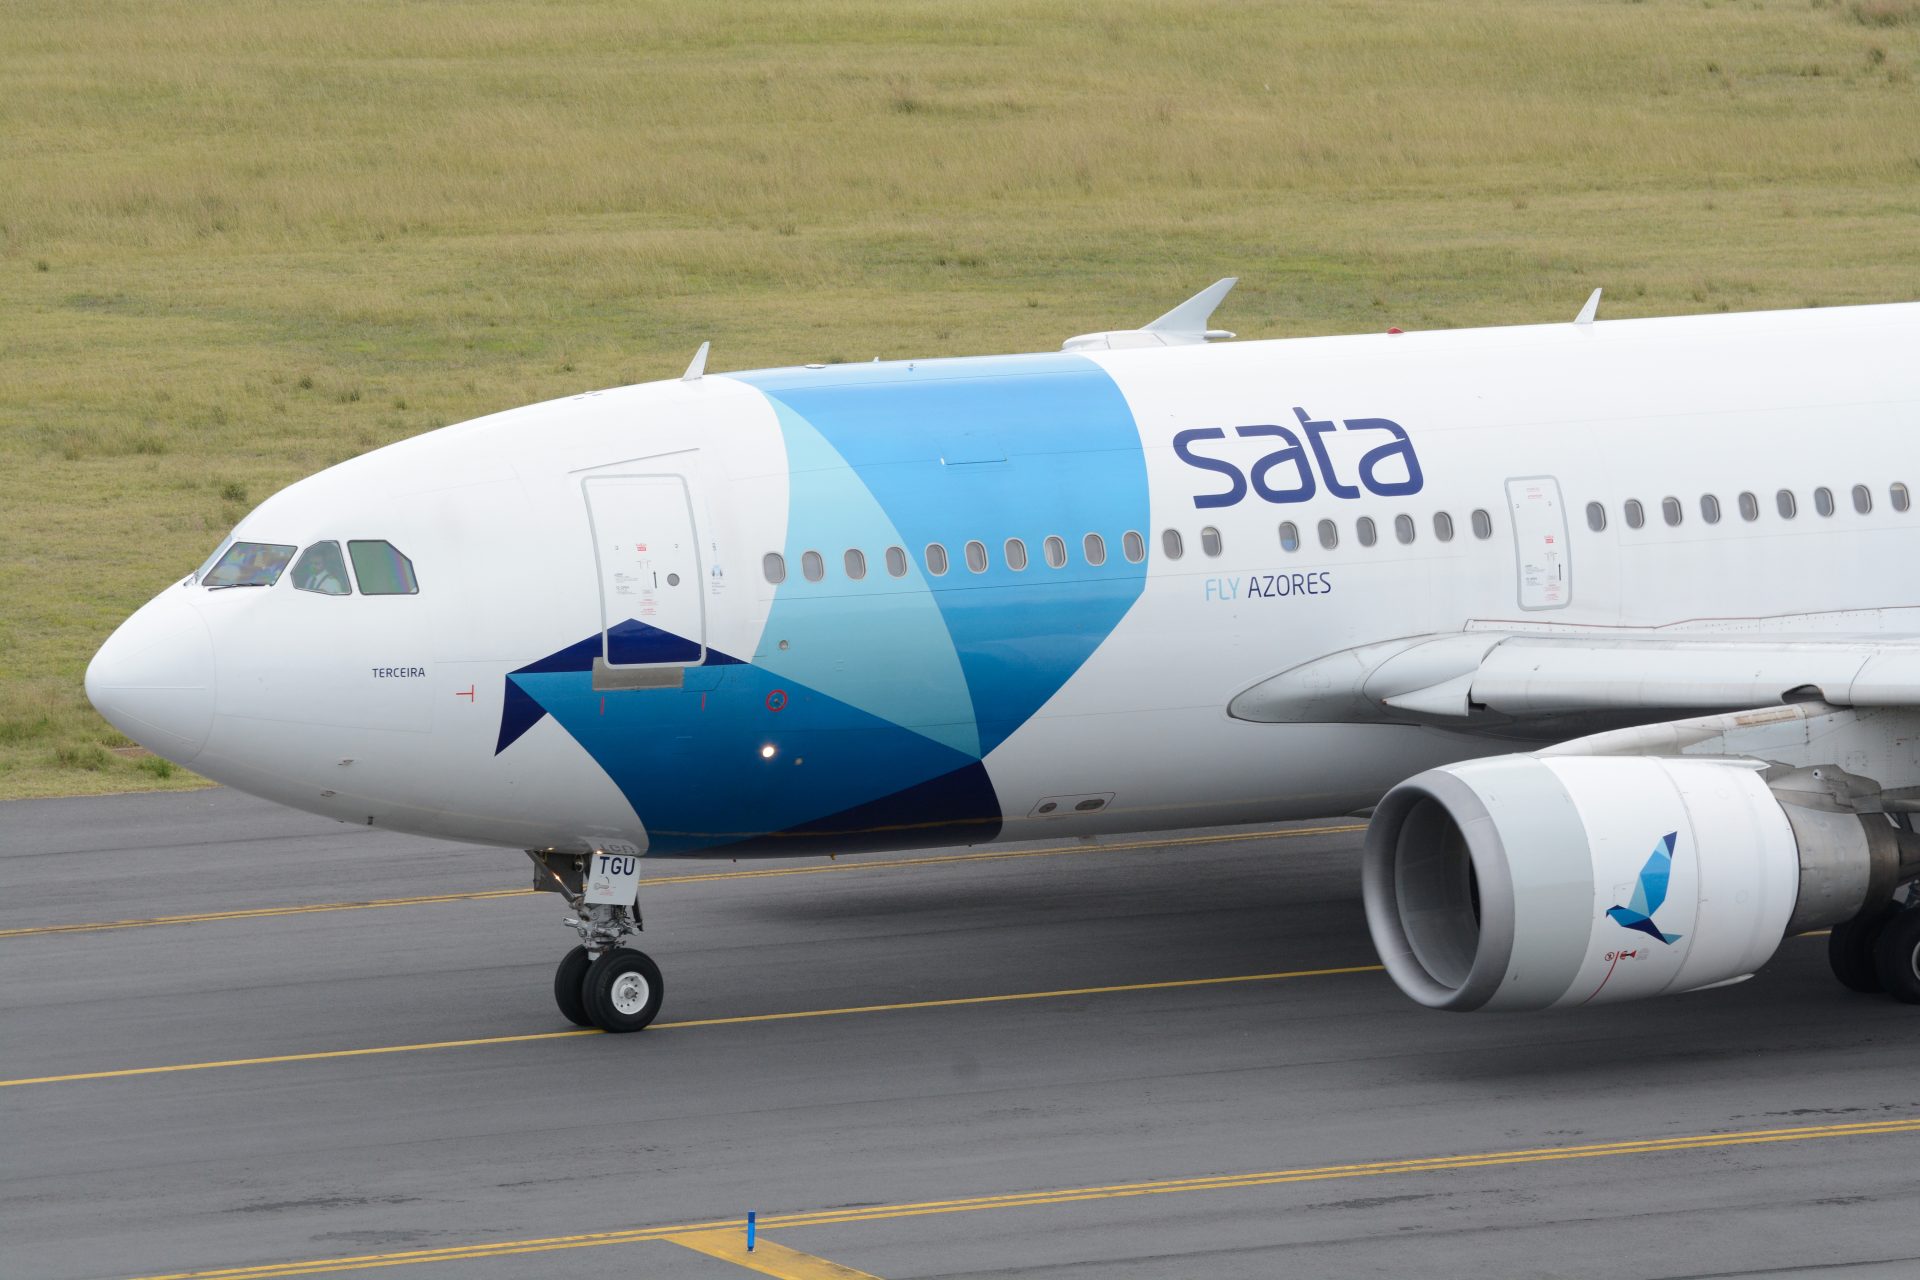 Companhias aéreas SATA ultrapassam marca histórica de 2 milhões de passageiros transportados